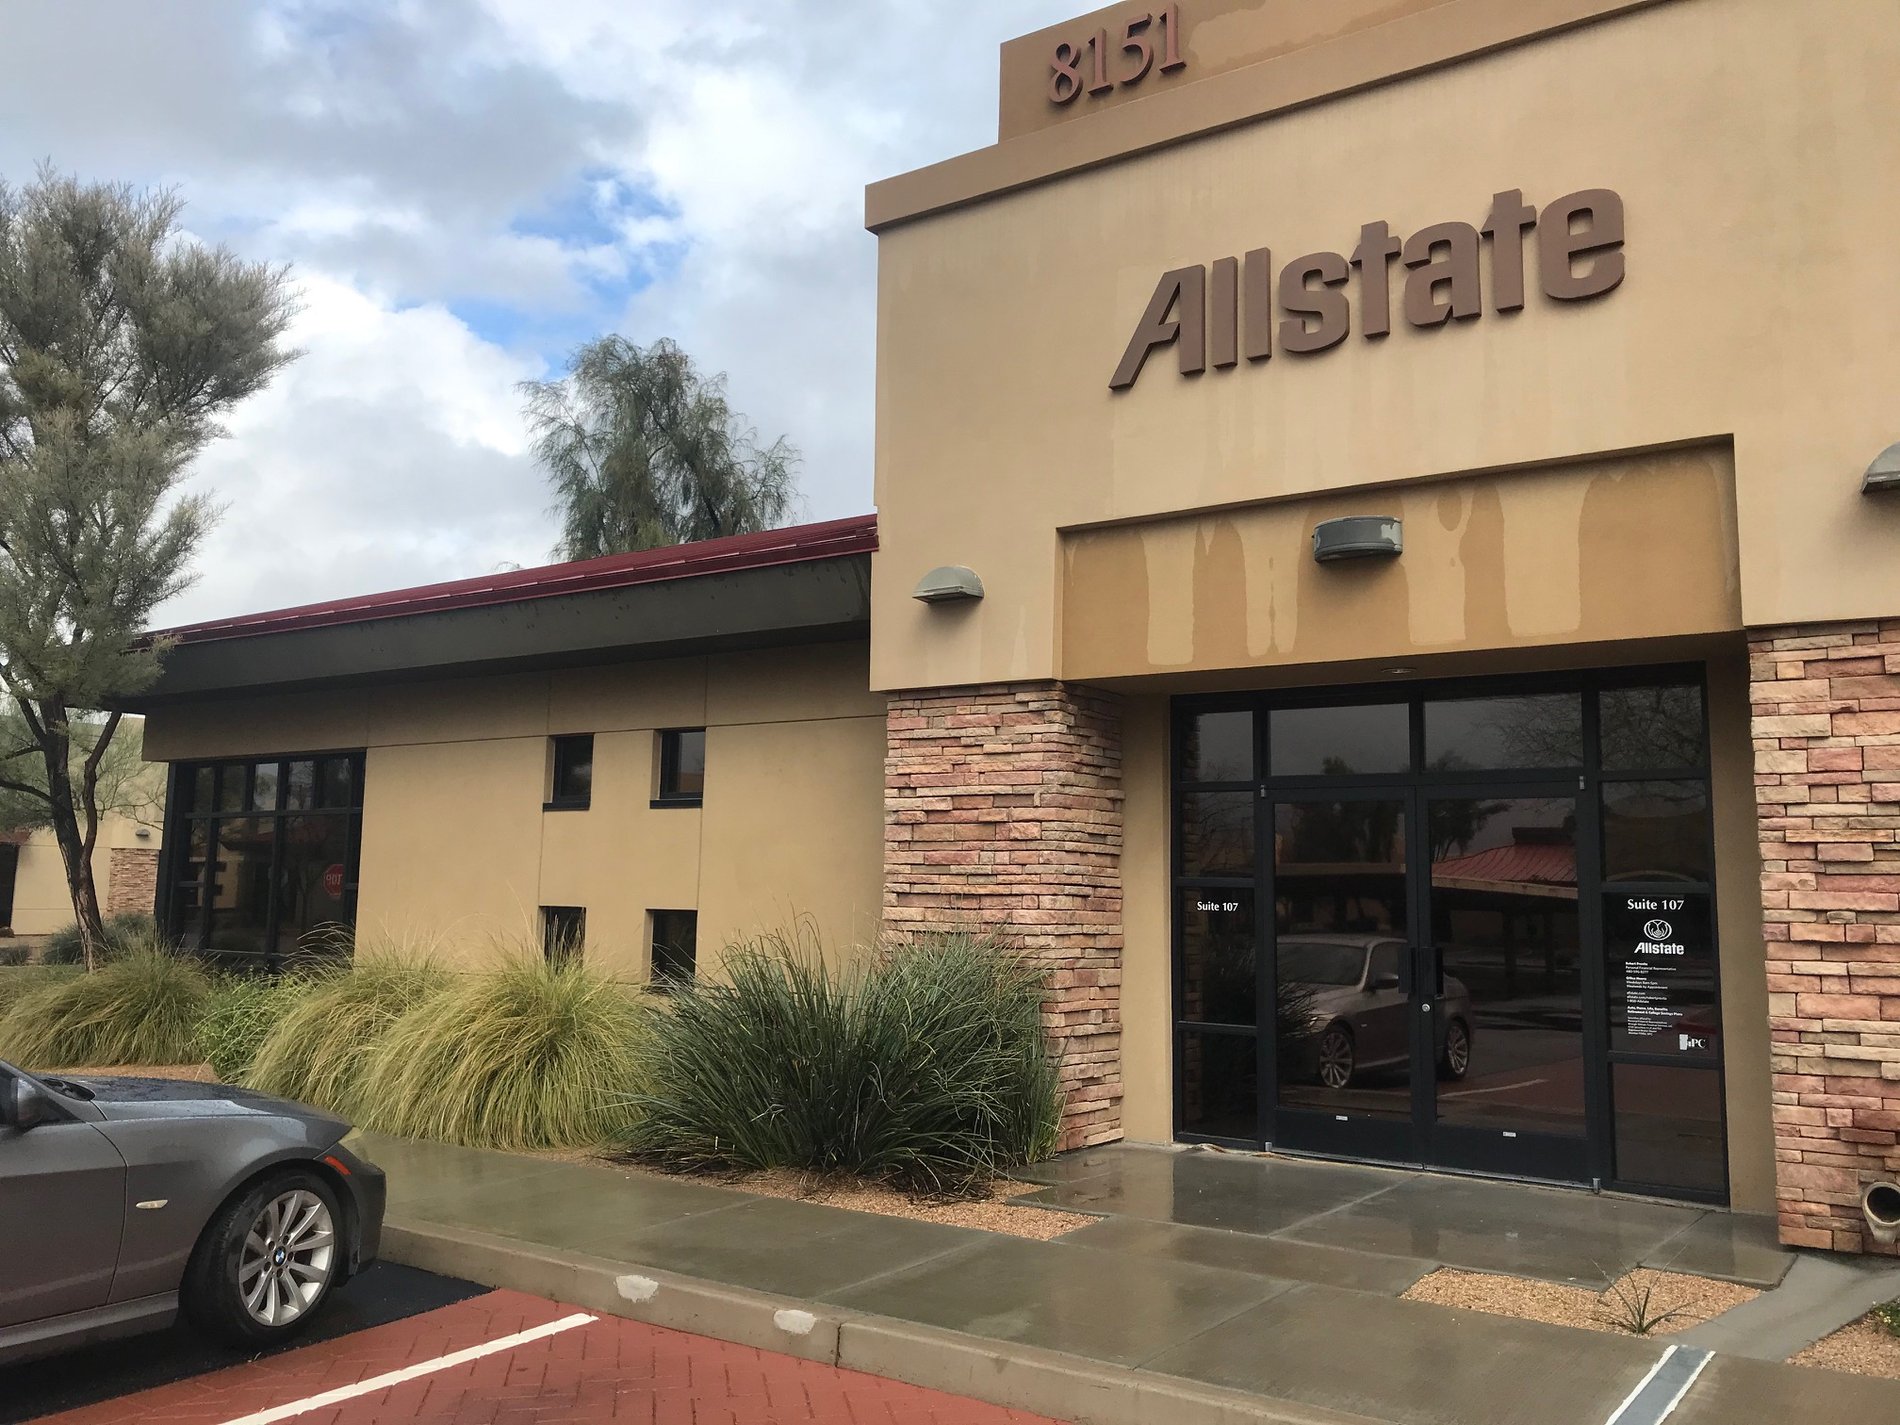 Allstate | Car Insurance in Scottsdale, AZ - Mike Olson